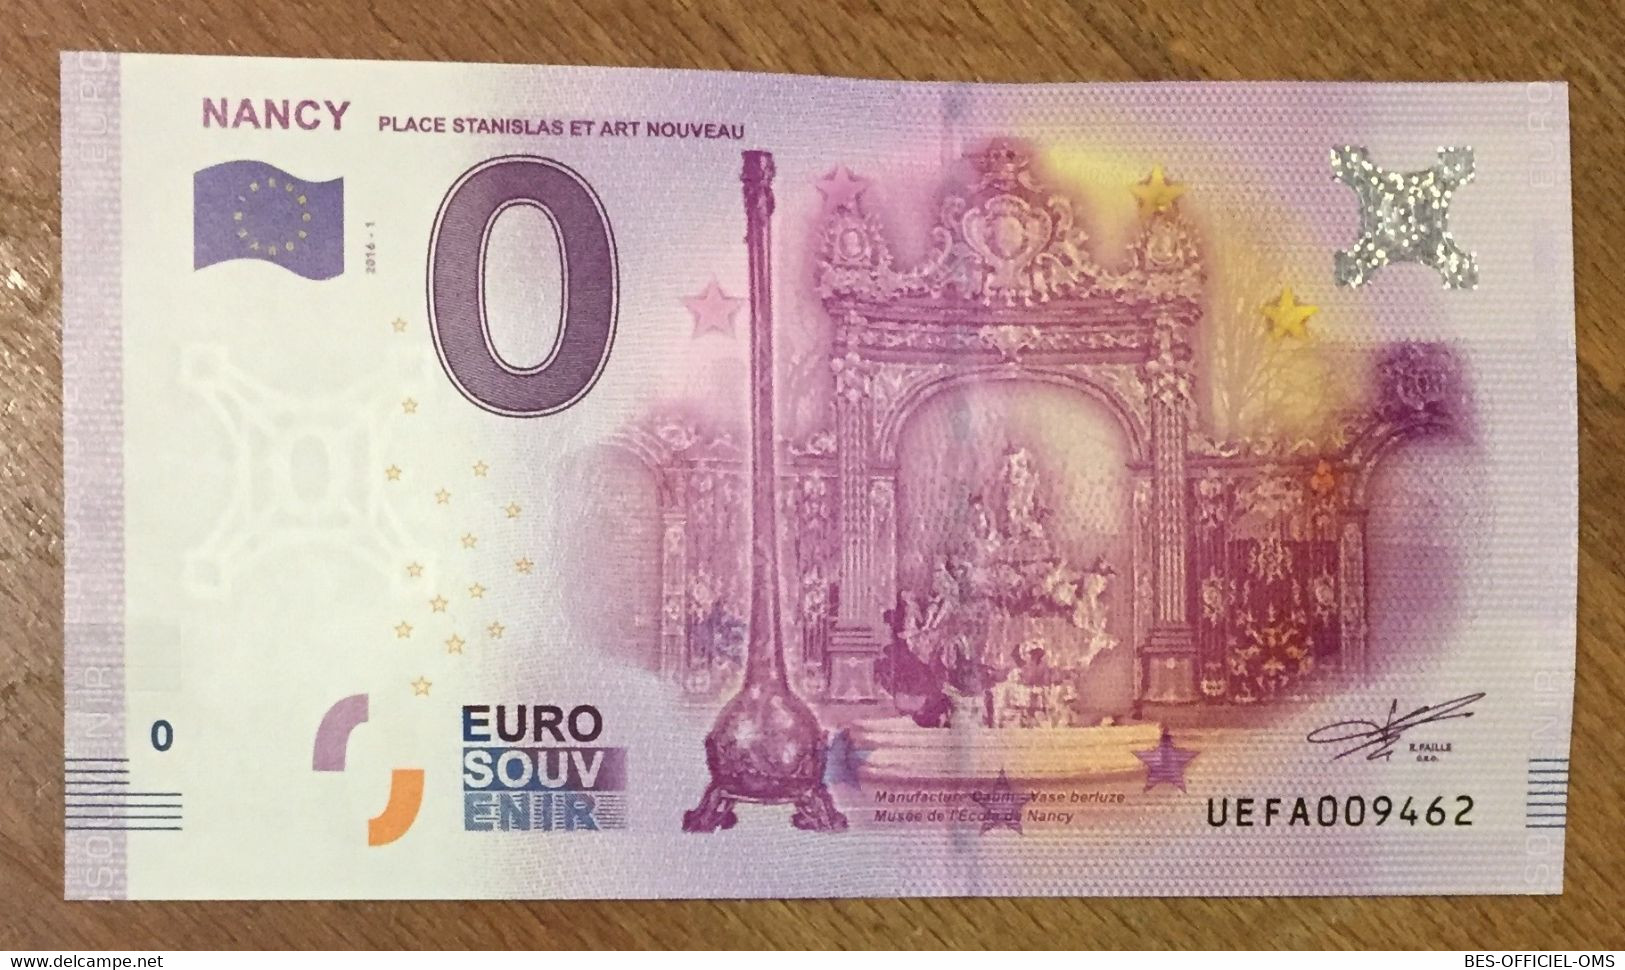 2016 BILLET 0 EURO SOUVENIR DPT 54 NANCY PLACE STANISLAS ZERO 0 EURO SCHEIN BANKNOTE PAPER MONEY BANK - Essais Privés / Non-officiels